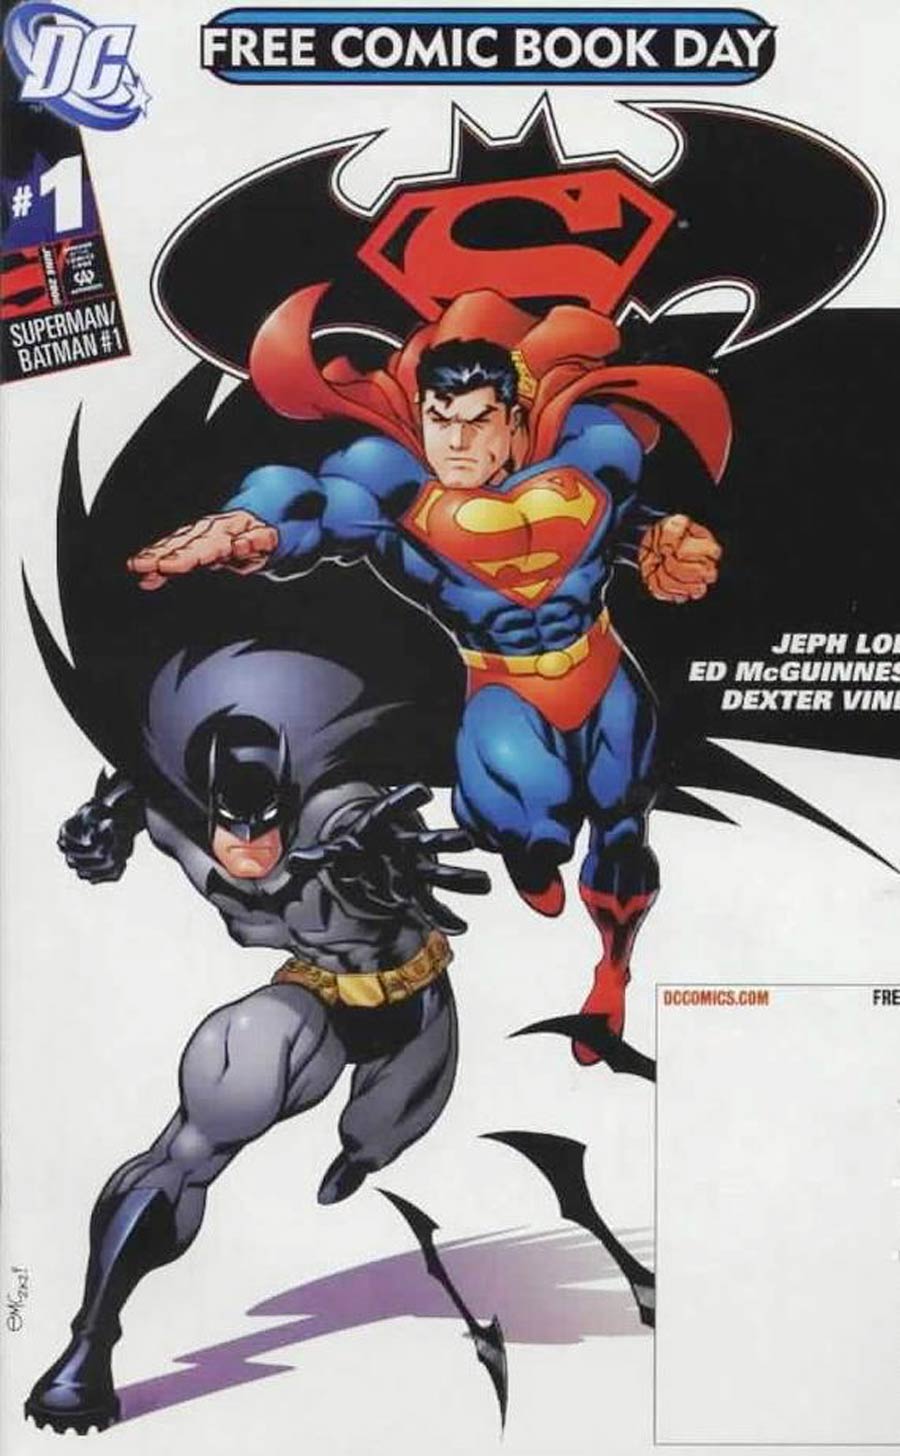 Superman Batman #1 Cover F FCBD 2006 Reprint